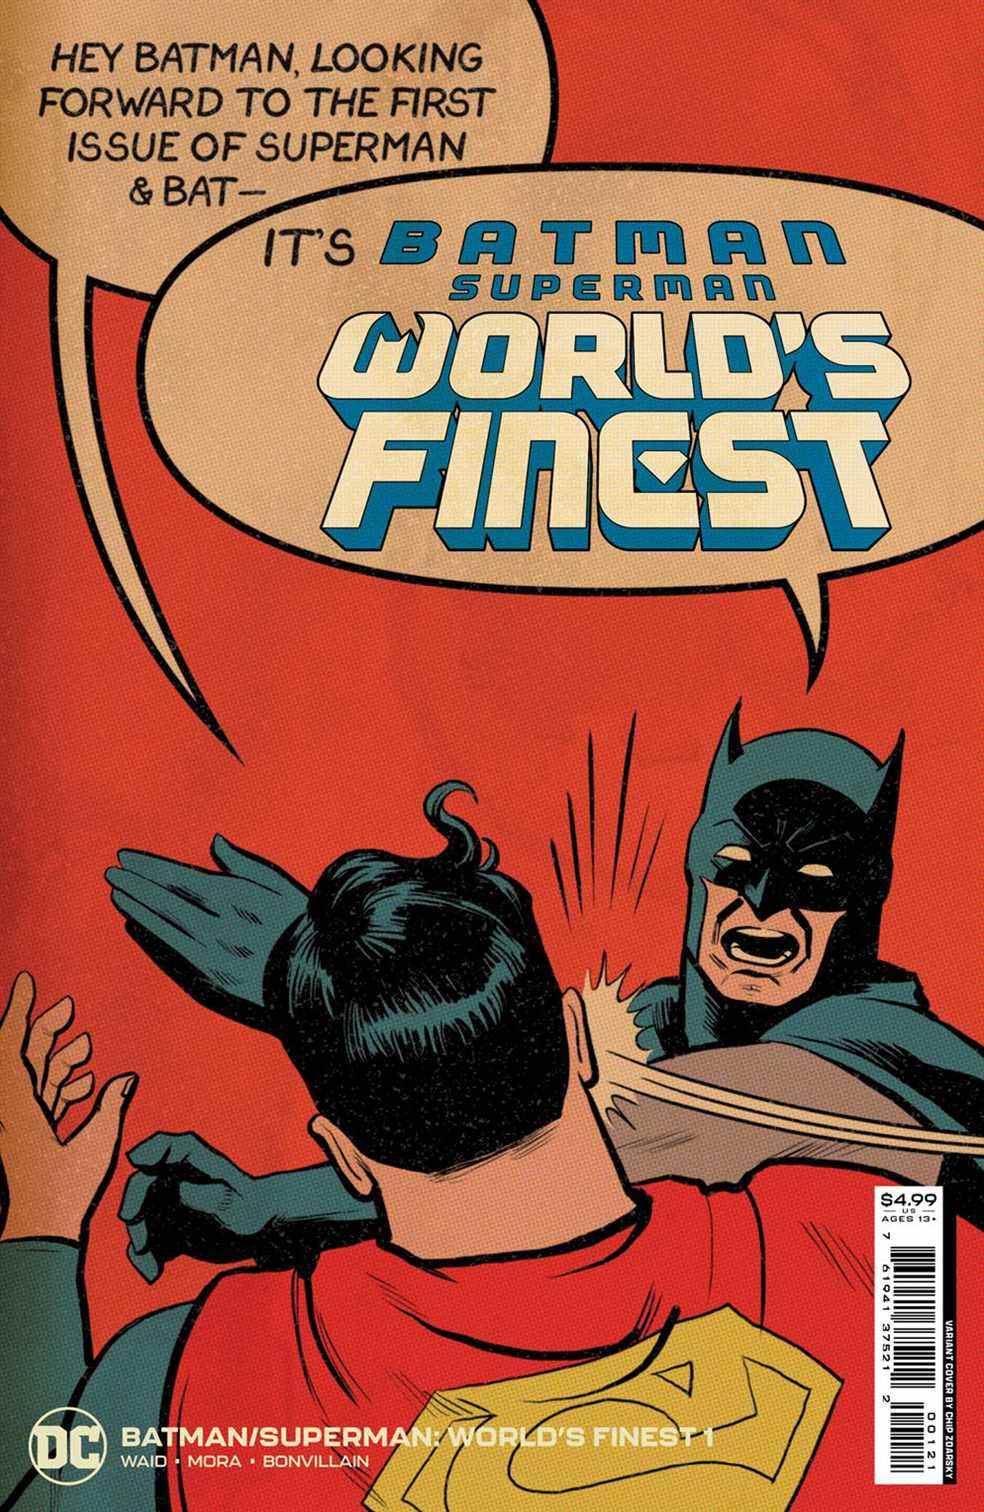 « Hé Batman, j'attends avec impatience le premier numéro de Superman &  Bat—» Superman commence à dire, alors que Batman l'interrompt avec une gifle au visage, en criant «C'est Batman/Superman: World's Finest!  sur la couverture de Batman/Superman : World's Finest #1 (2022).